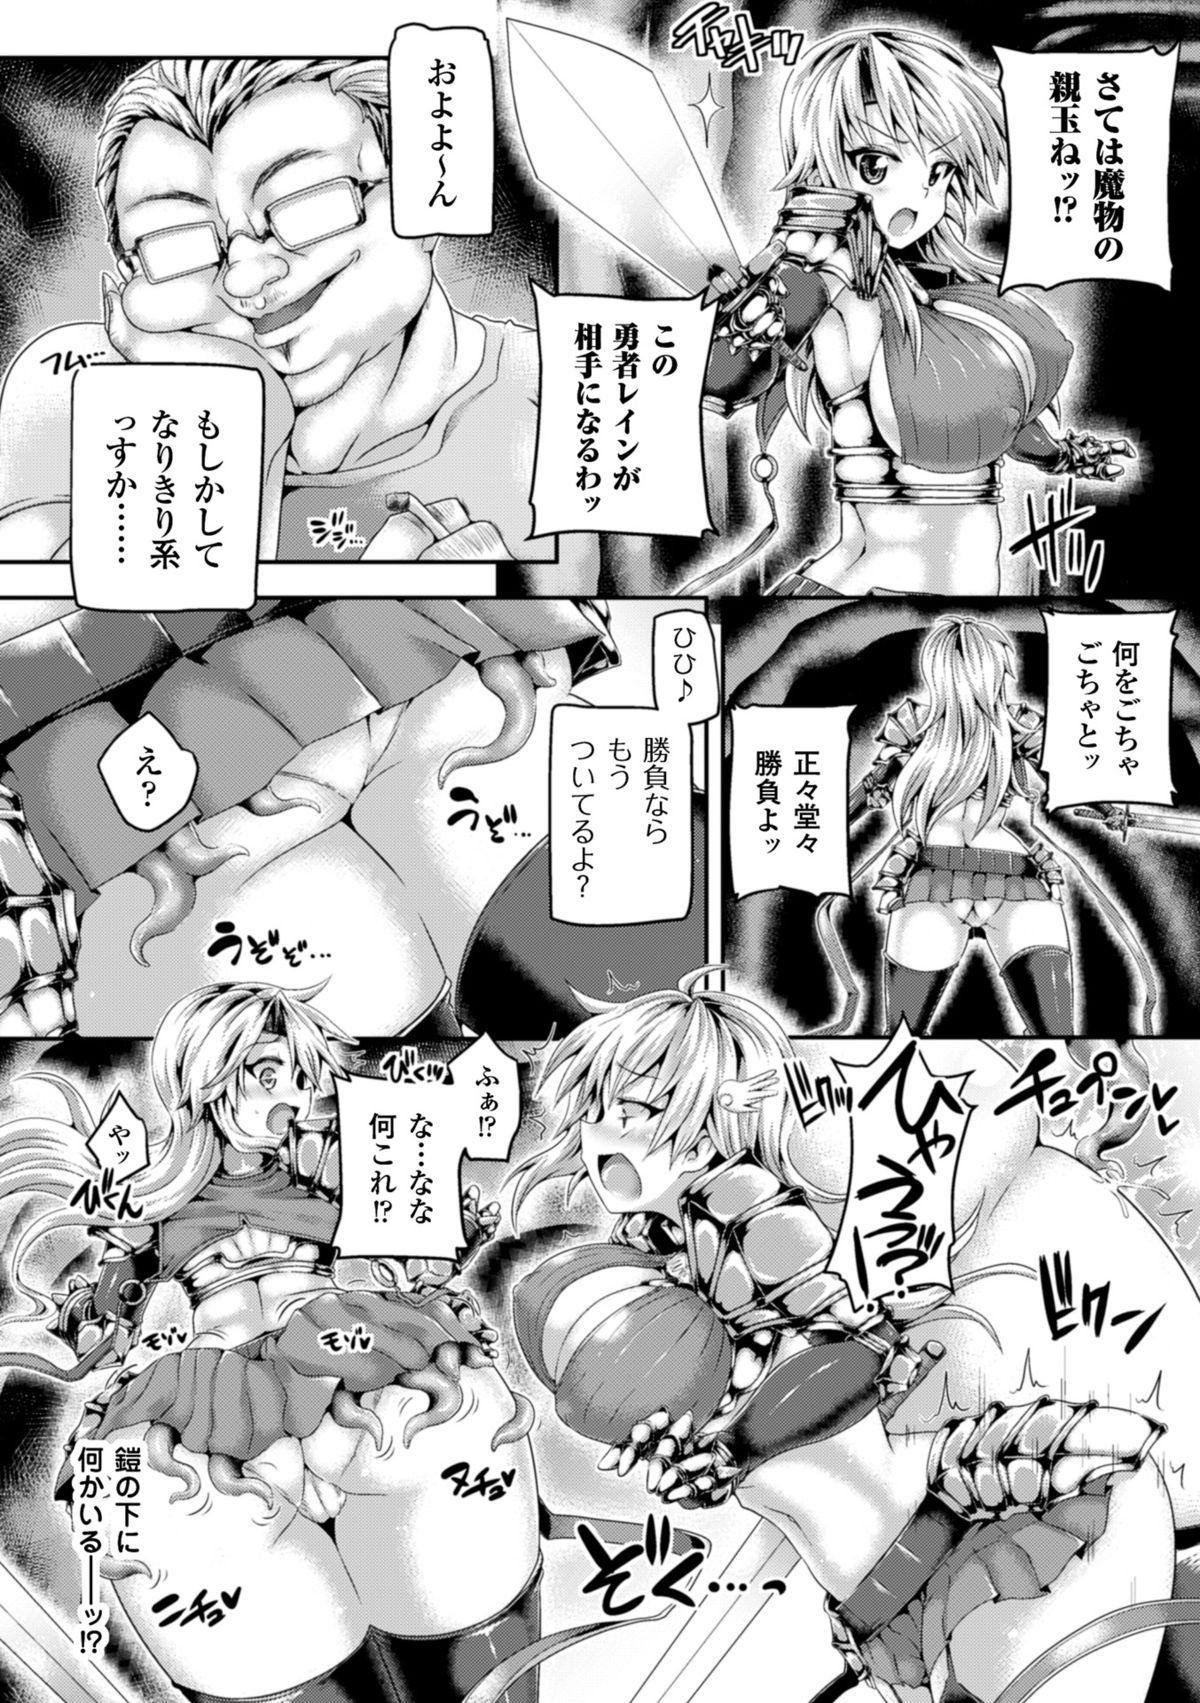 2D Comic Magazine Masou Injoku Yoroi ni Moteasobareru Heroine-tachi Vol. 1 7